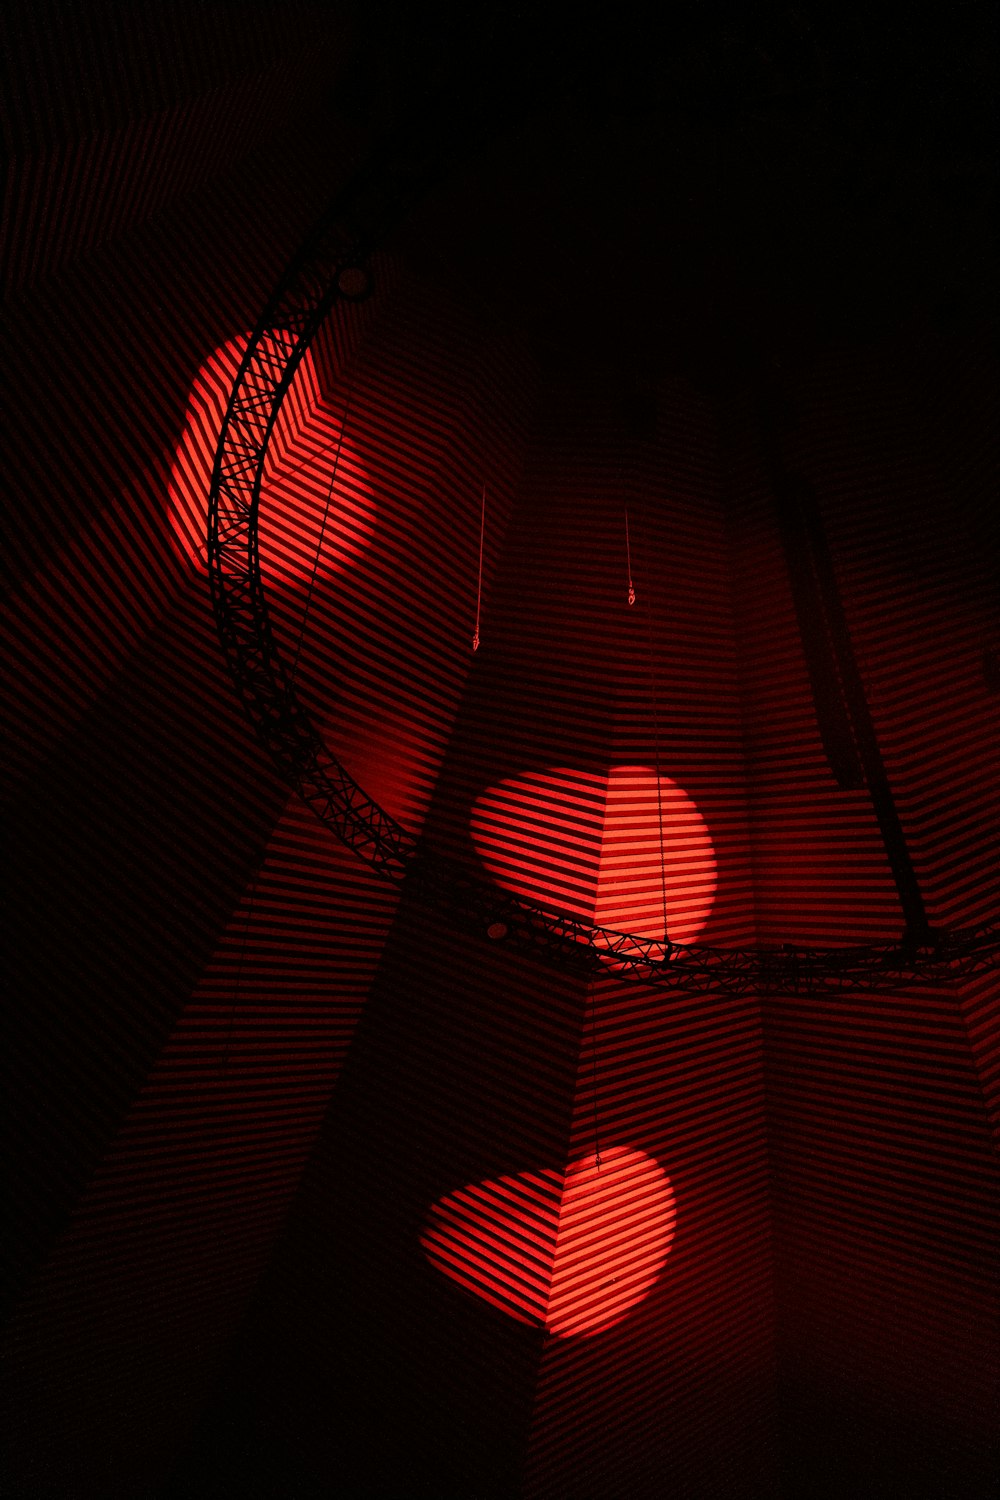 Una luz roja brilla sobre un fondo negro